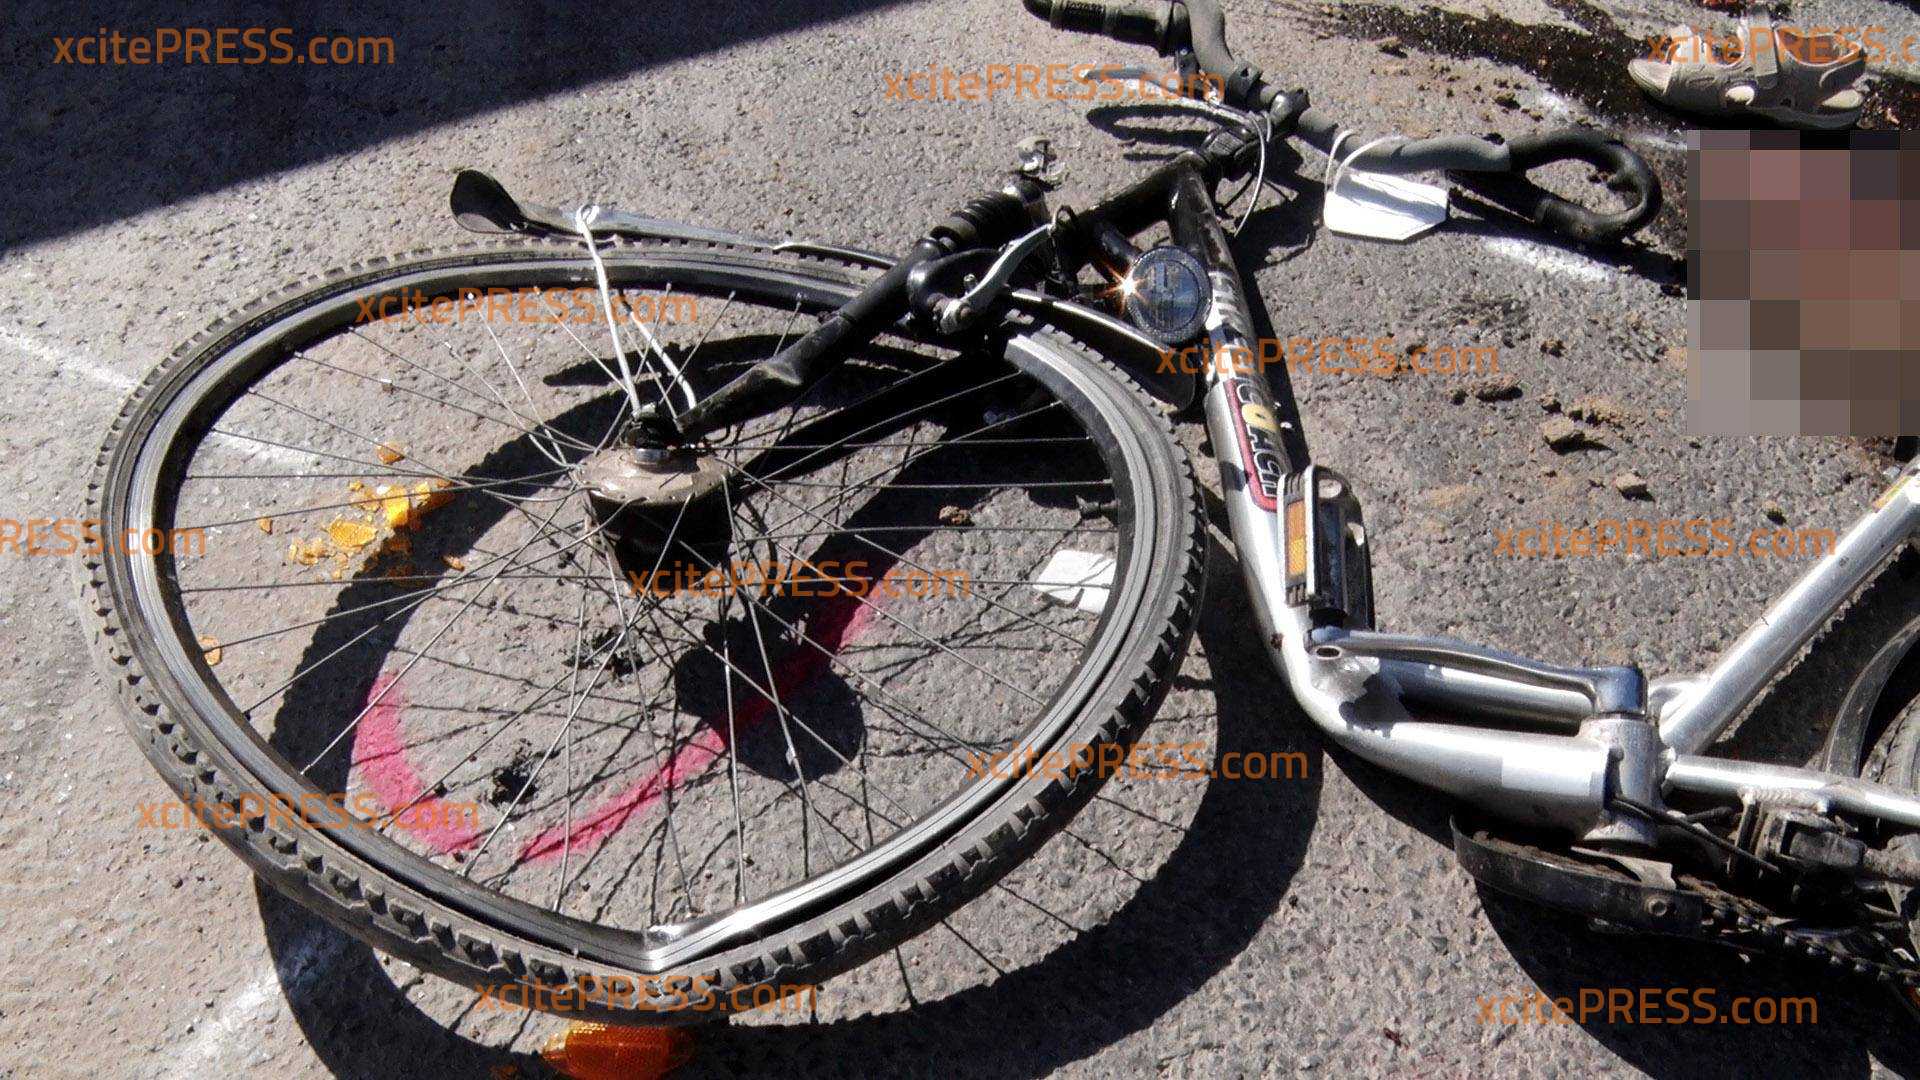 Baustellen-LKW überrollt Fahrrad: Radfahrerin (77) schwerst verletzt